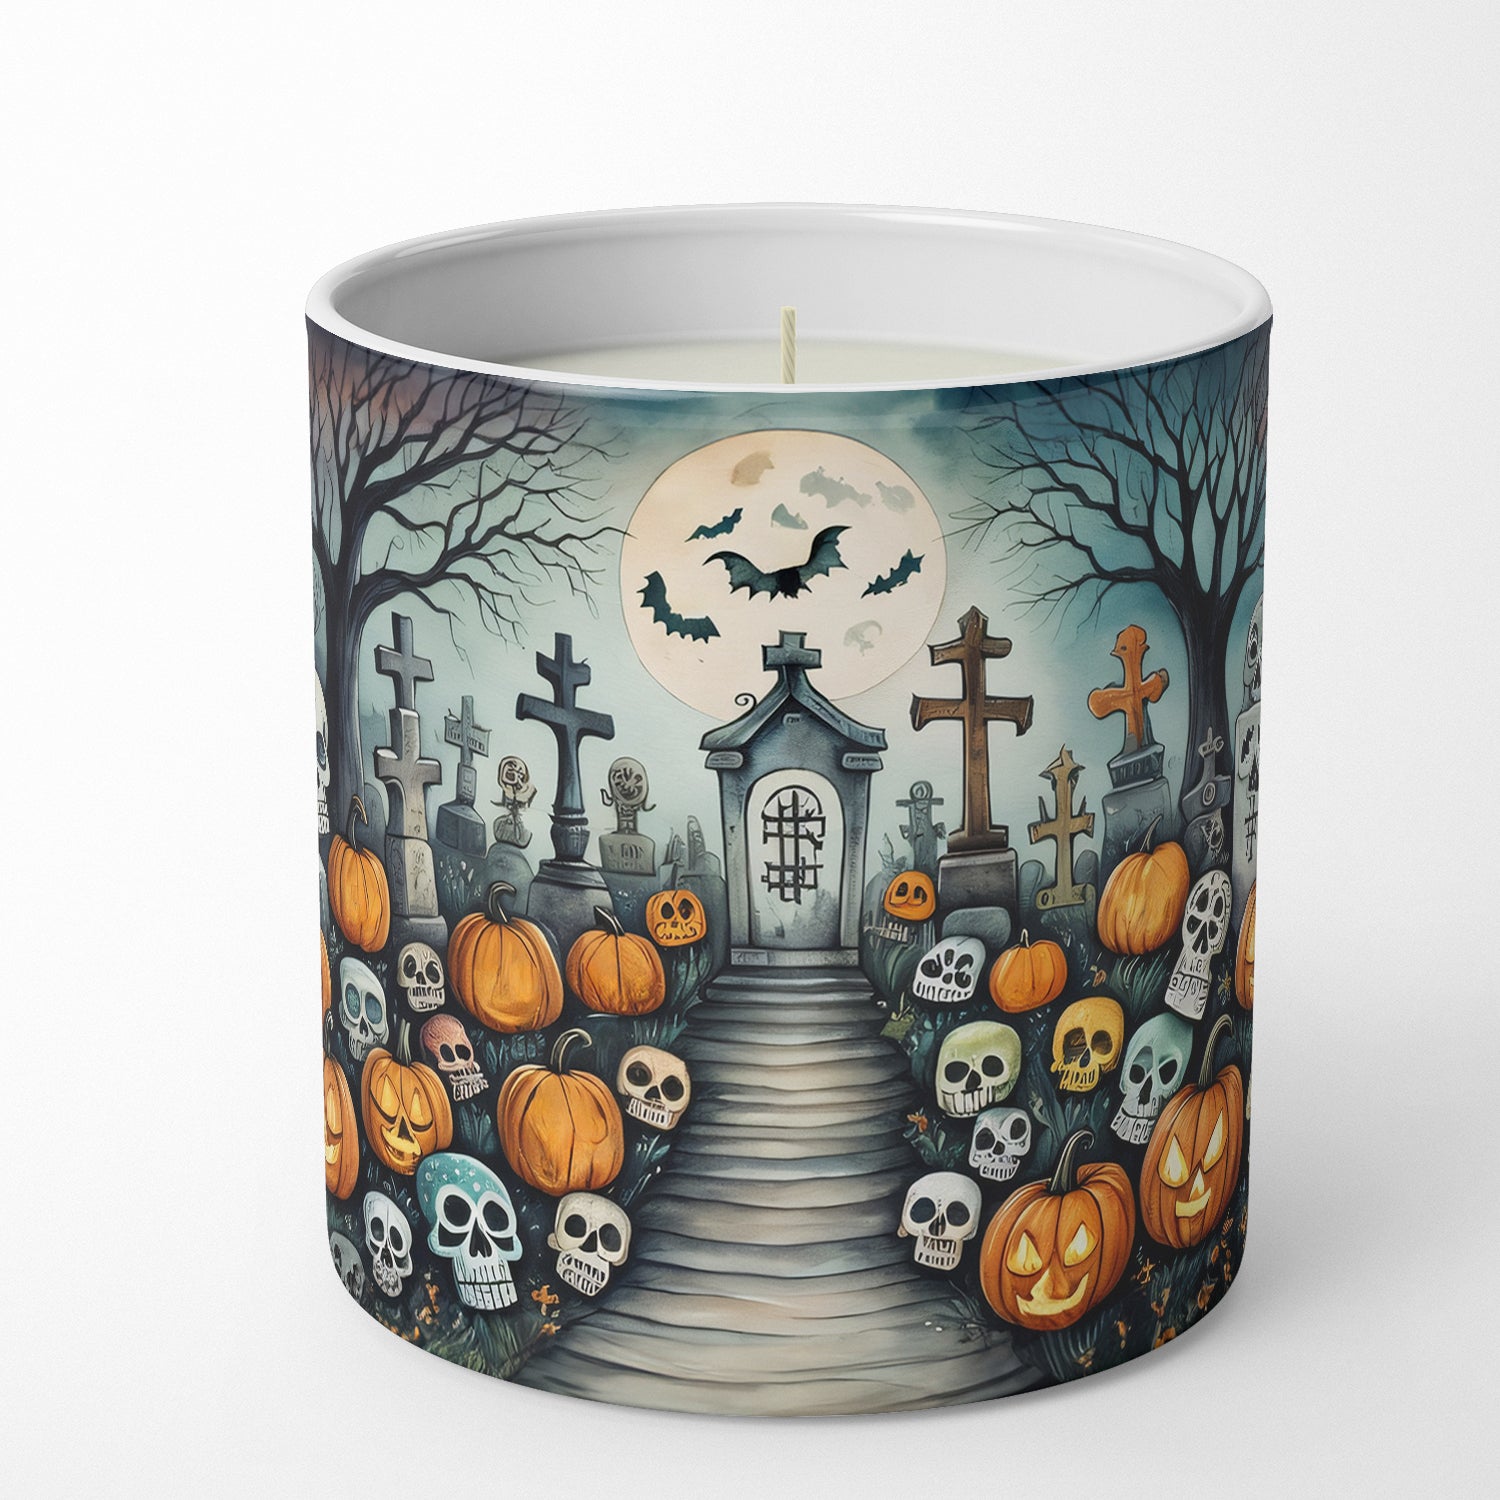 Calaveras Sugar Skulls Spooky Halloween Decorative Soy Candle